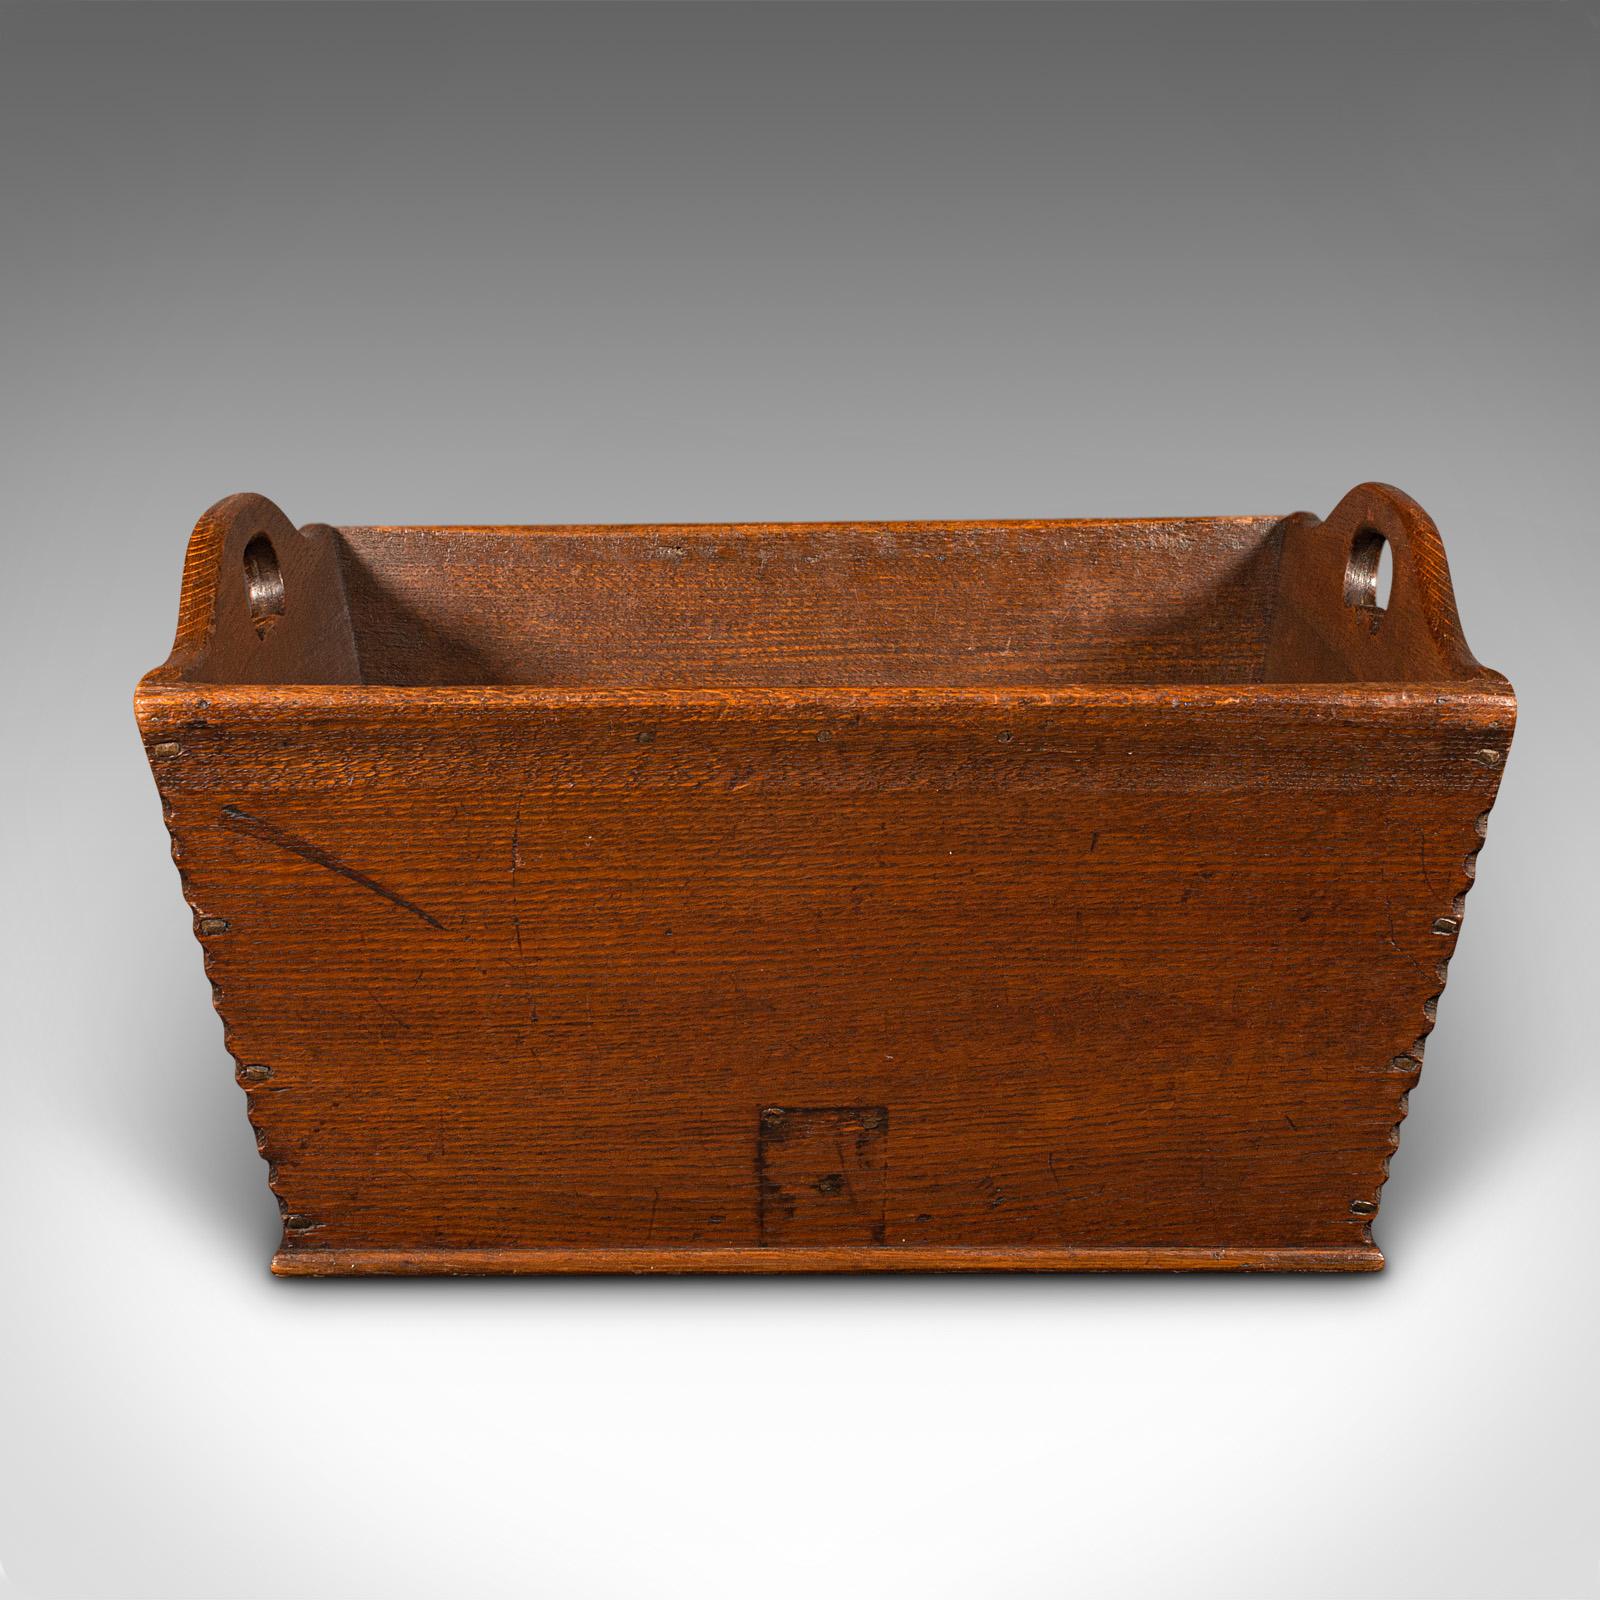 Dies ist eine antike Käsetransportbox. Ein englisches Gartentablett oder eine Arbeitsbox aus Eichenholz aus der georgianischen Periode, um 1800.

Großzügig bemessene Box, ideal für den Transport großer Käseladungen oder Gartenprodukte
Zeigt eine